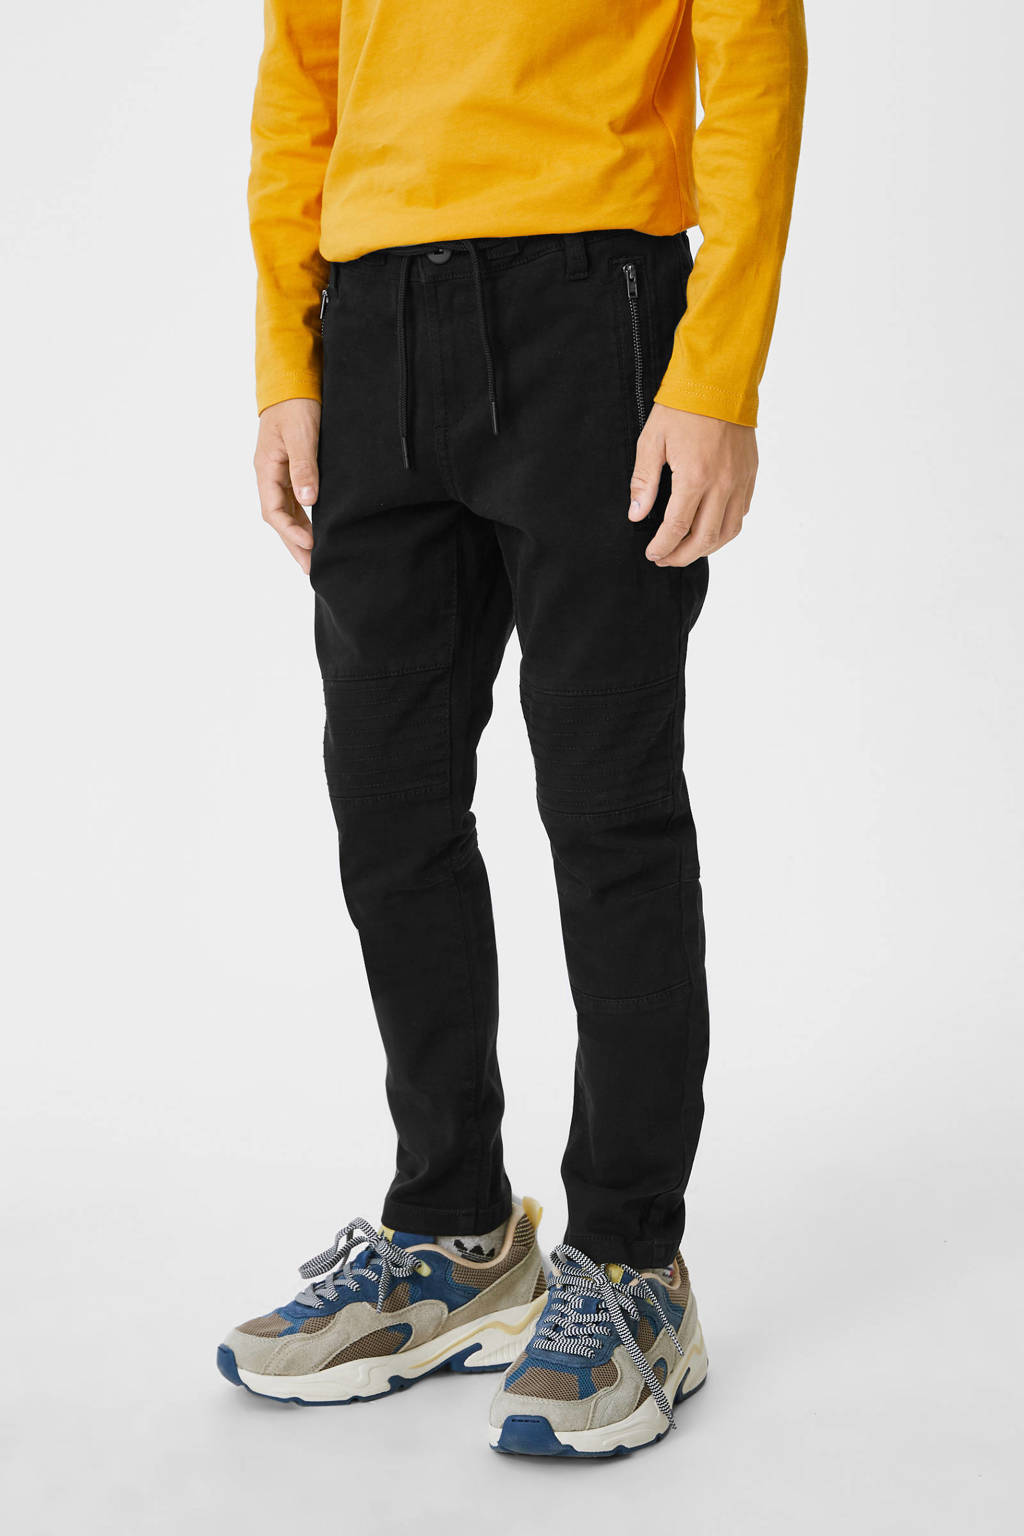 Zwarte jongens C&A joggingbroek van stretchkatoen met regular waist, elastische tailleband met koord en tekst print